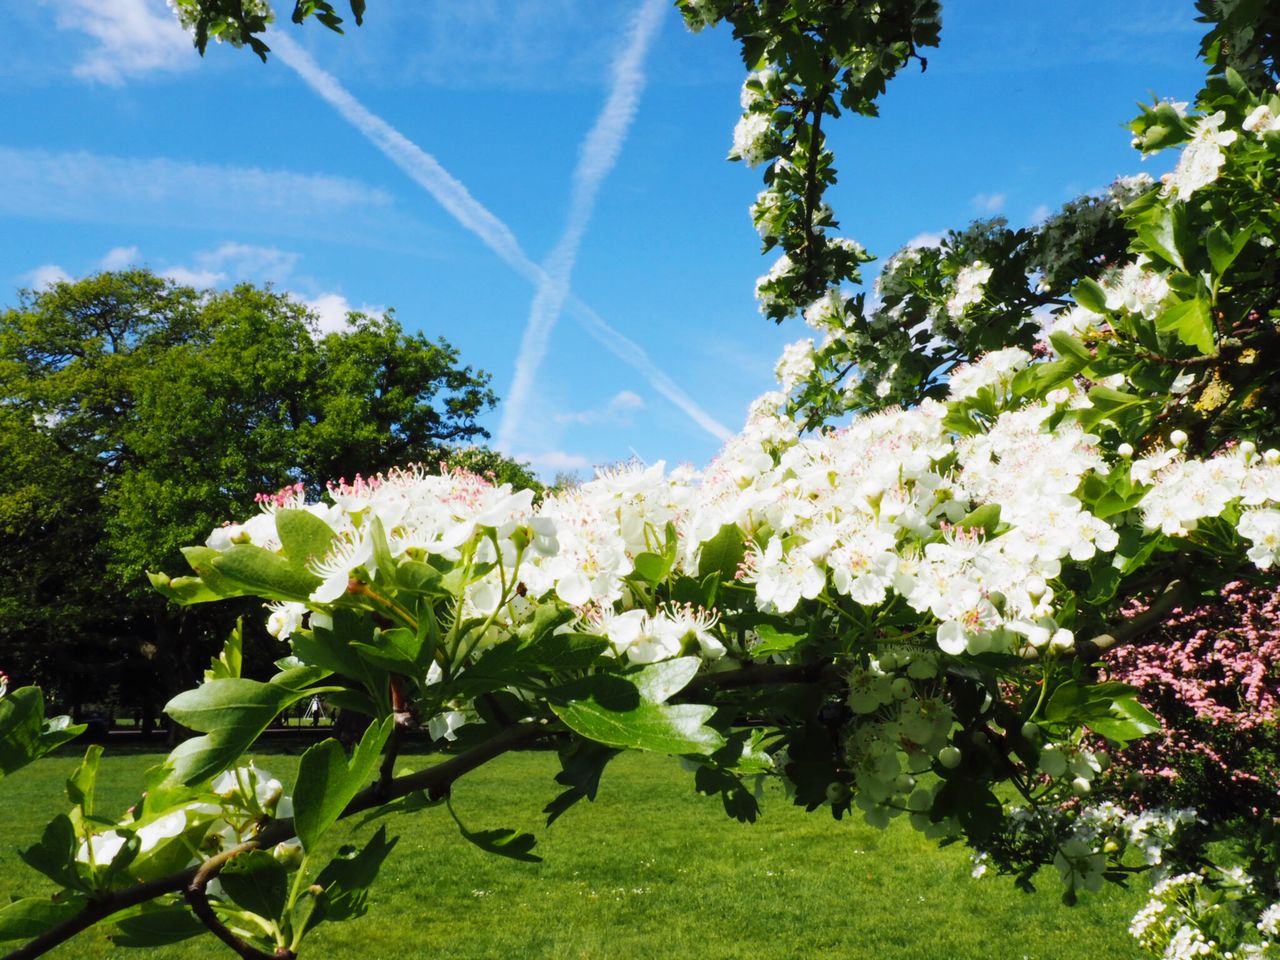 WHITE FLOWERING PLANT AGAINST SKY